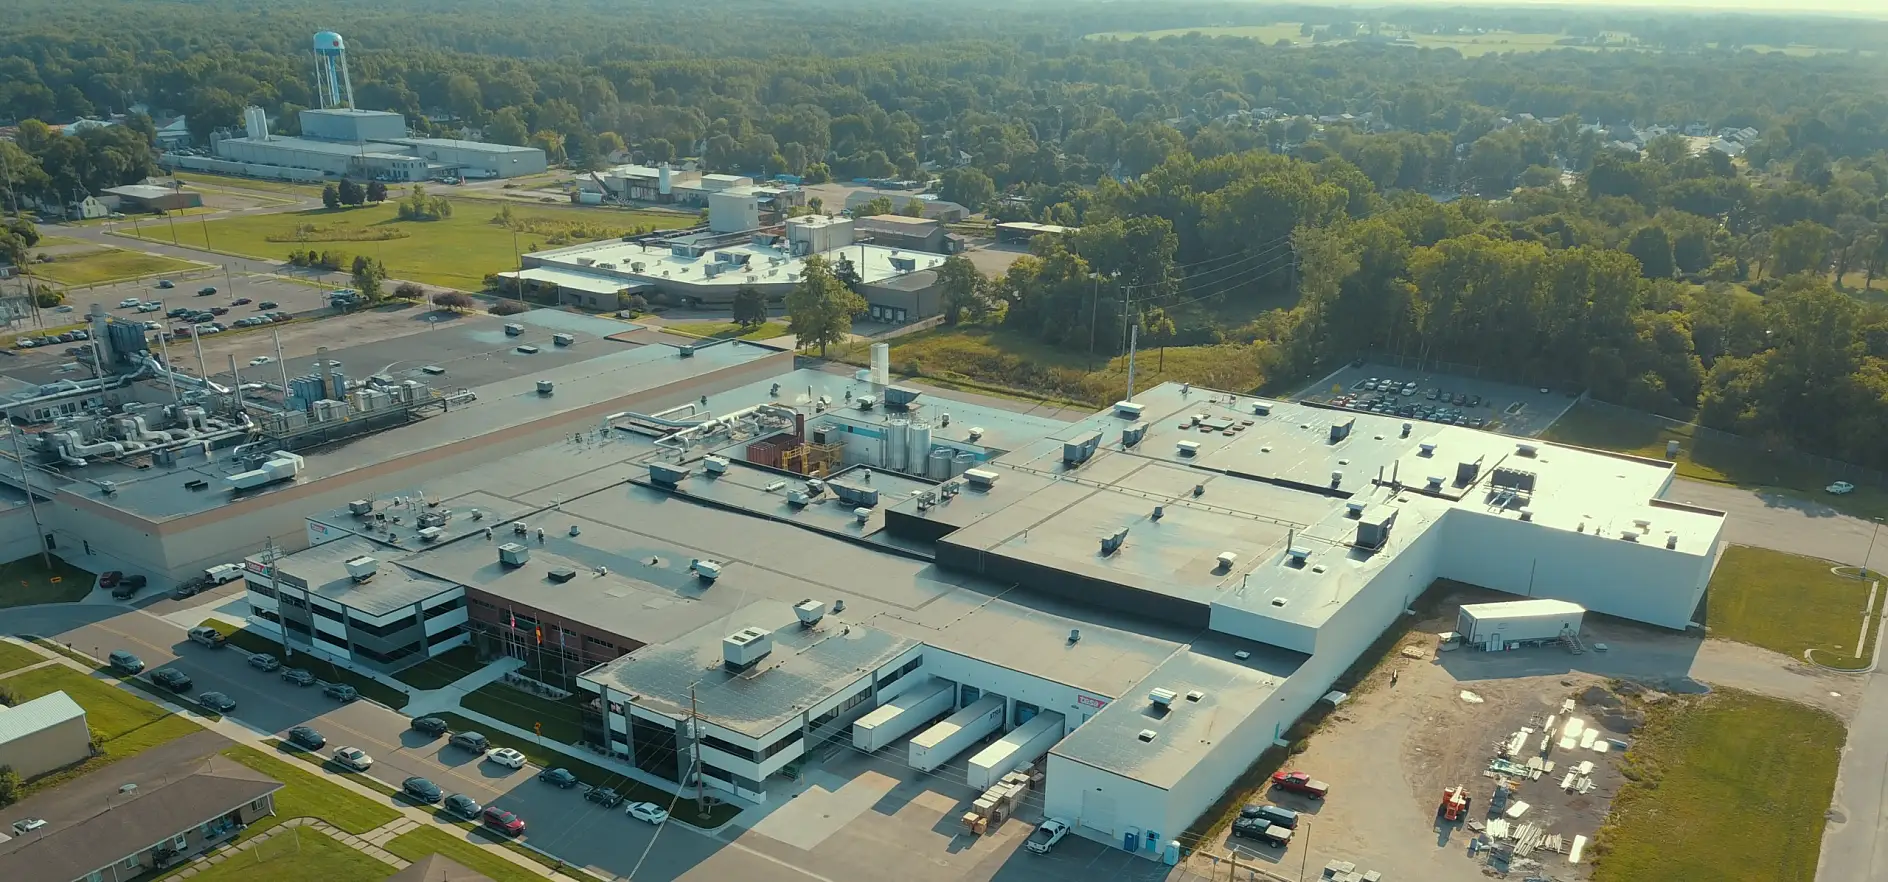 アメリカ・スパルタ工場は、アメリカのミシガン州にあります。自動車業界向けの製品をはじめ、多くの業務用粘着テープ製品がこの工場で製造され、世界各国へ届けられています。